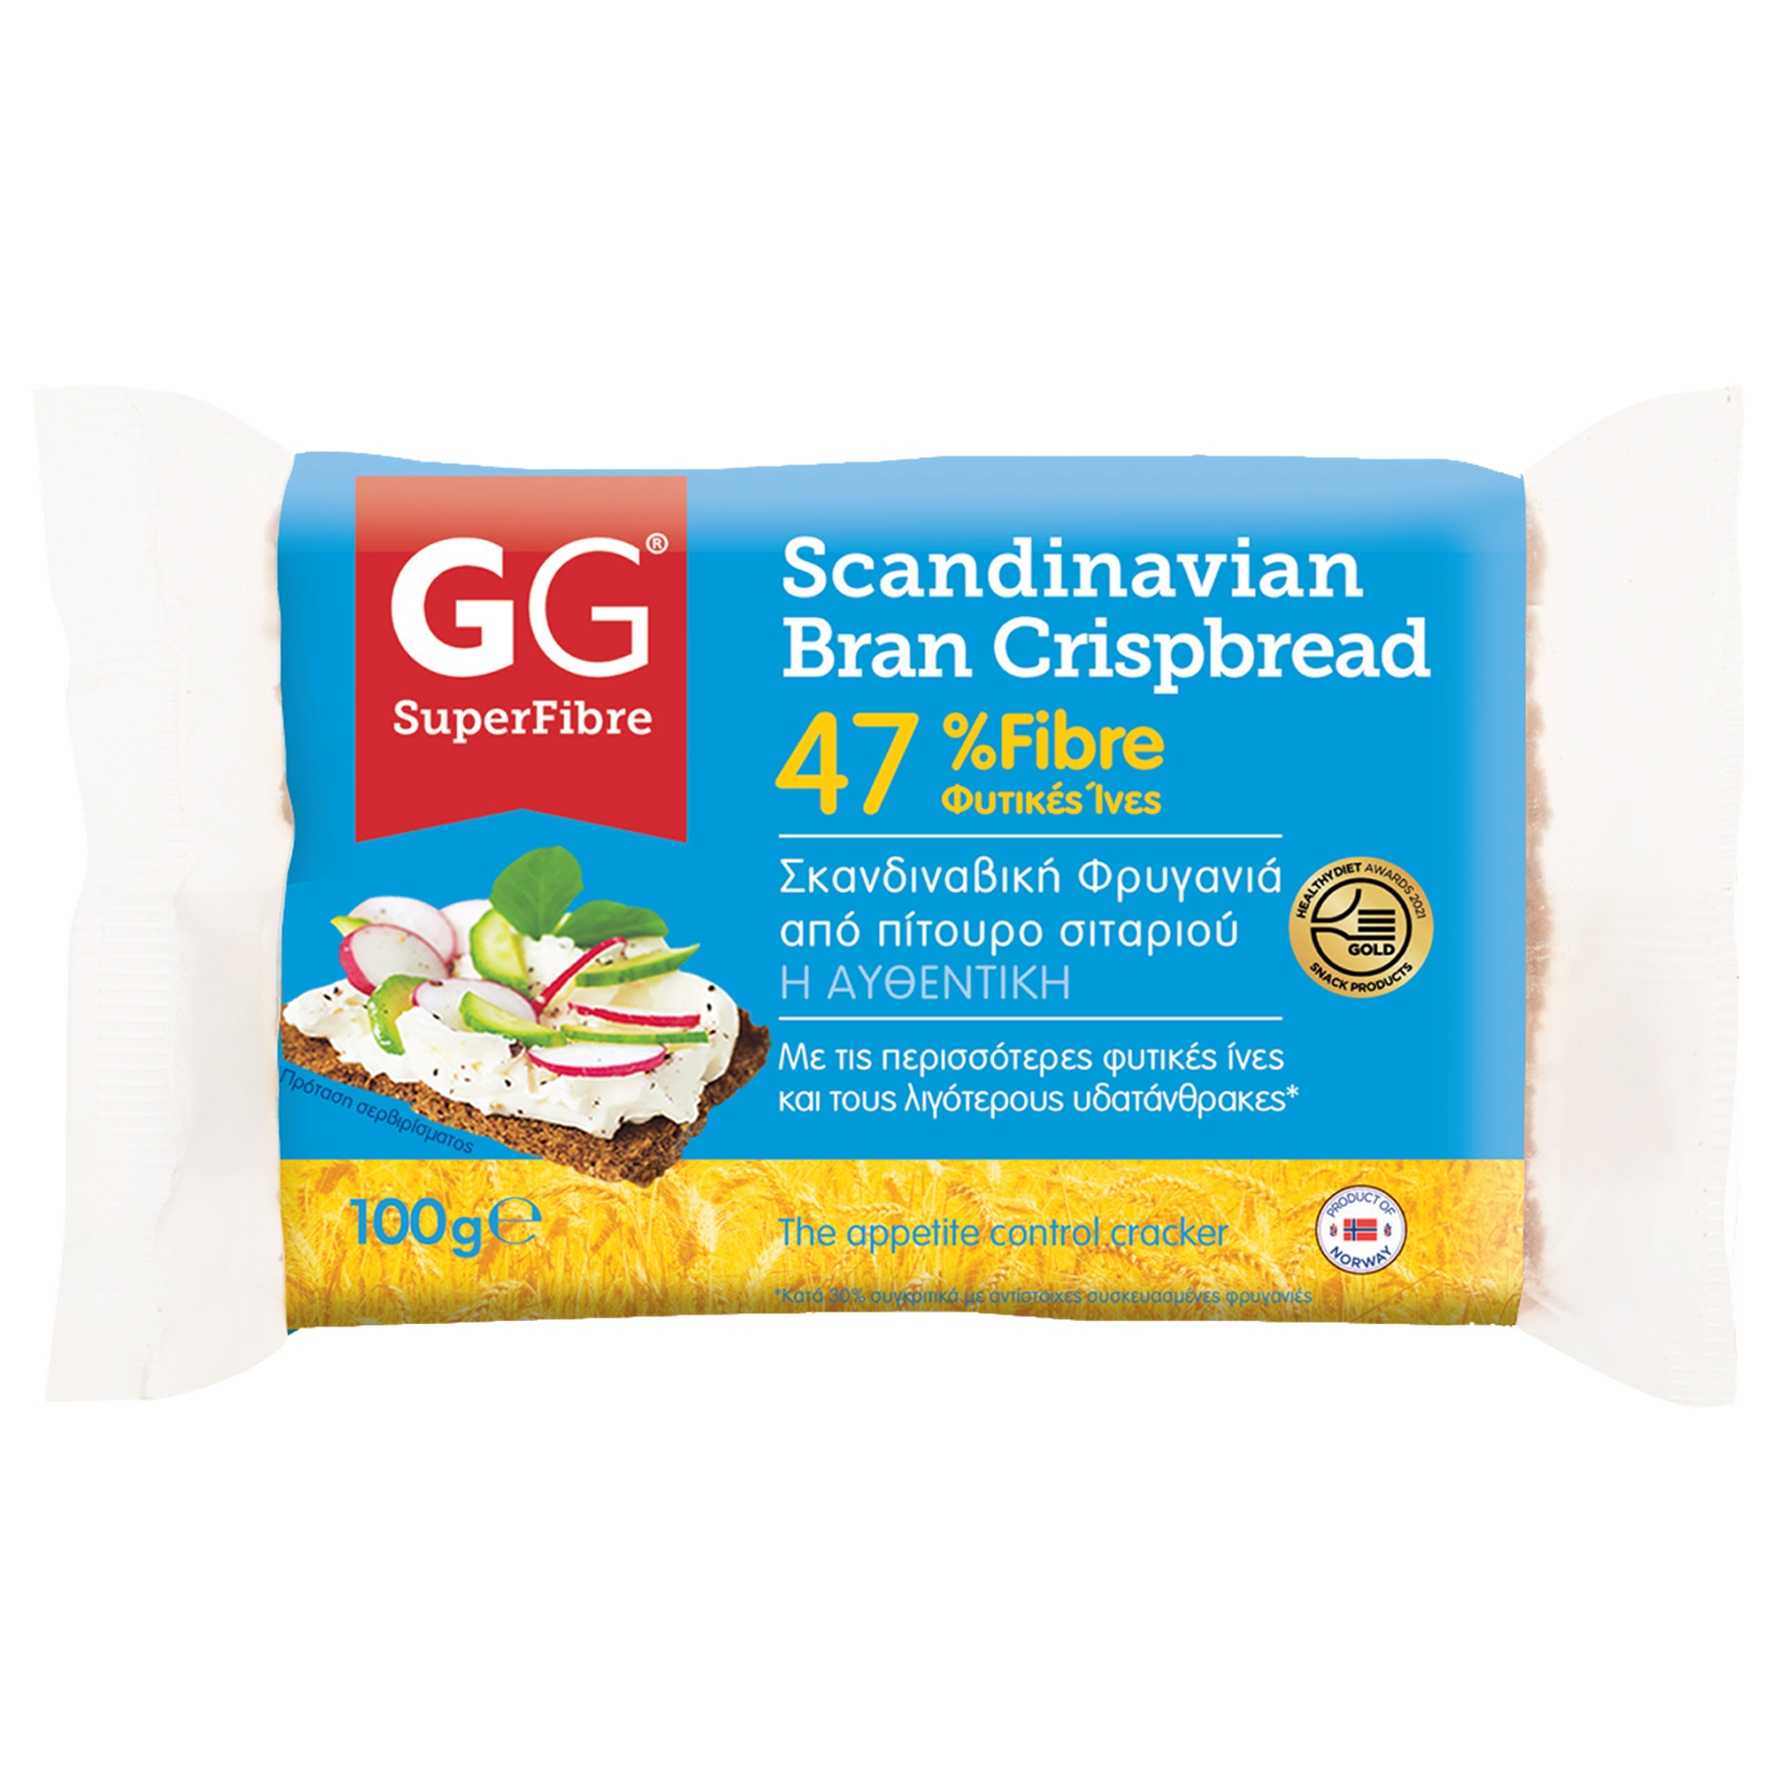 Αυθεντικές Σκανδιναβικές φρυγανιές 47% fibre από ακατέργαστο πίτουρο σιταριού